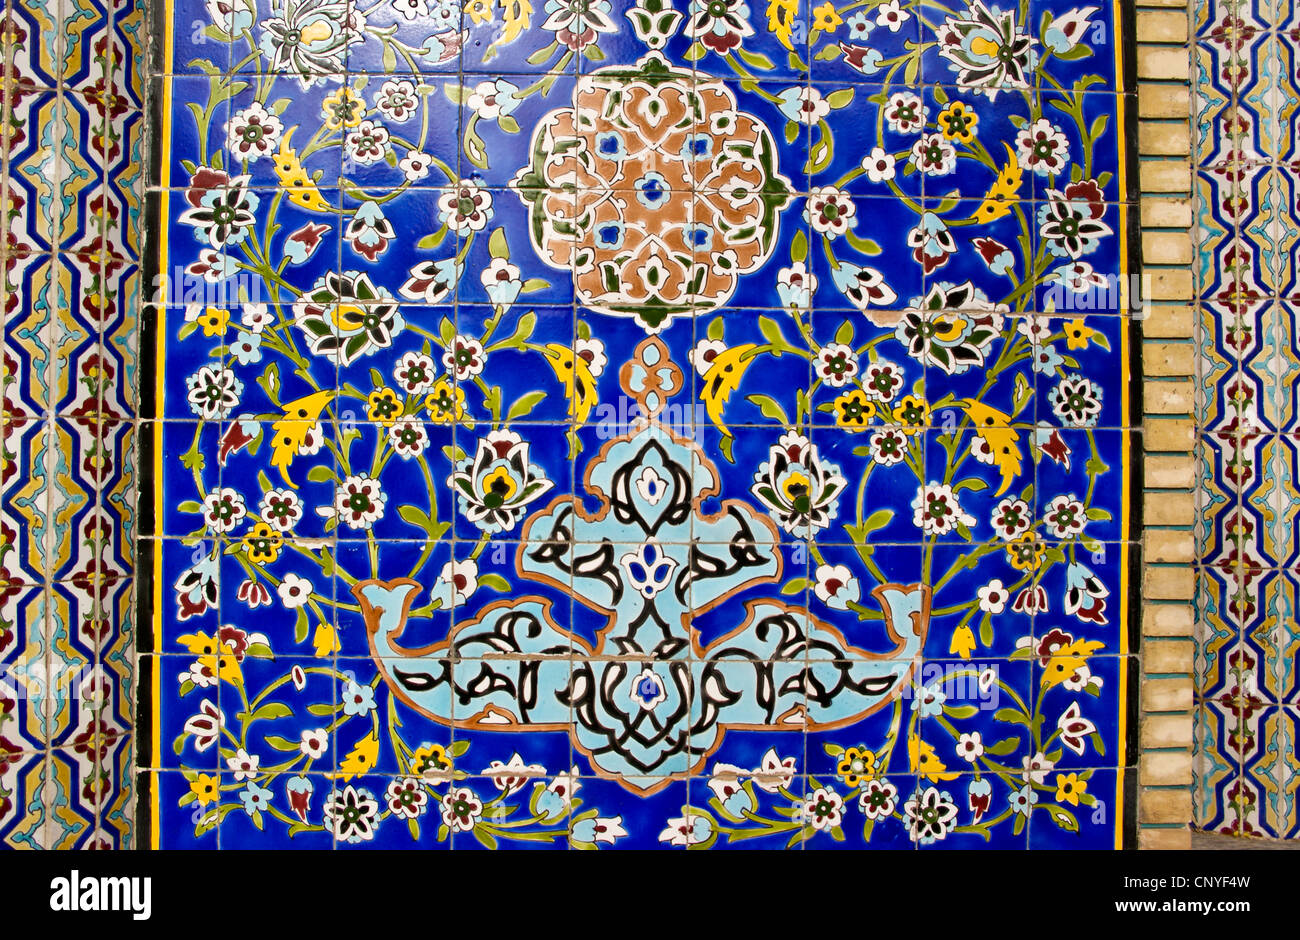 Islamic tile design on a mosque, Bur Dubai, United Arab Emirates Stock Photo